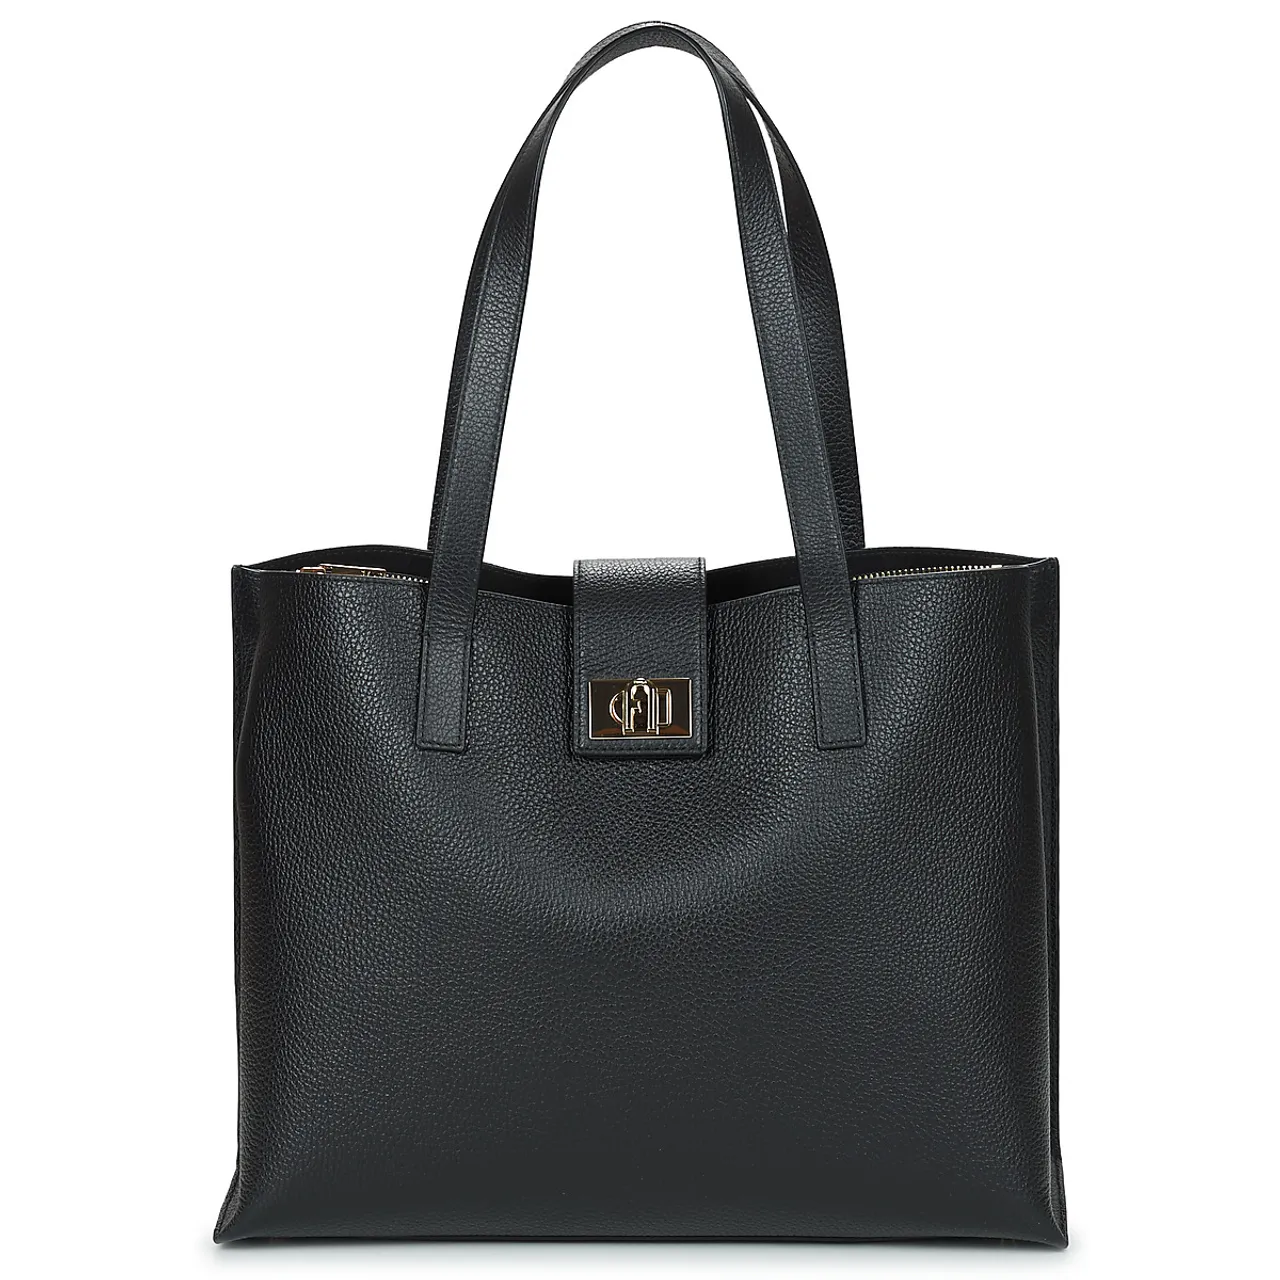 Furla  FURLA 1927 L TOTE 36 SOFT  women's Shopper bag in Black